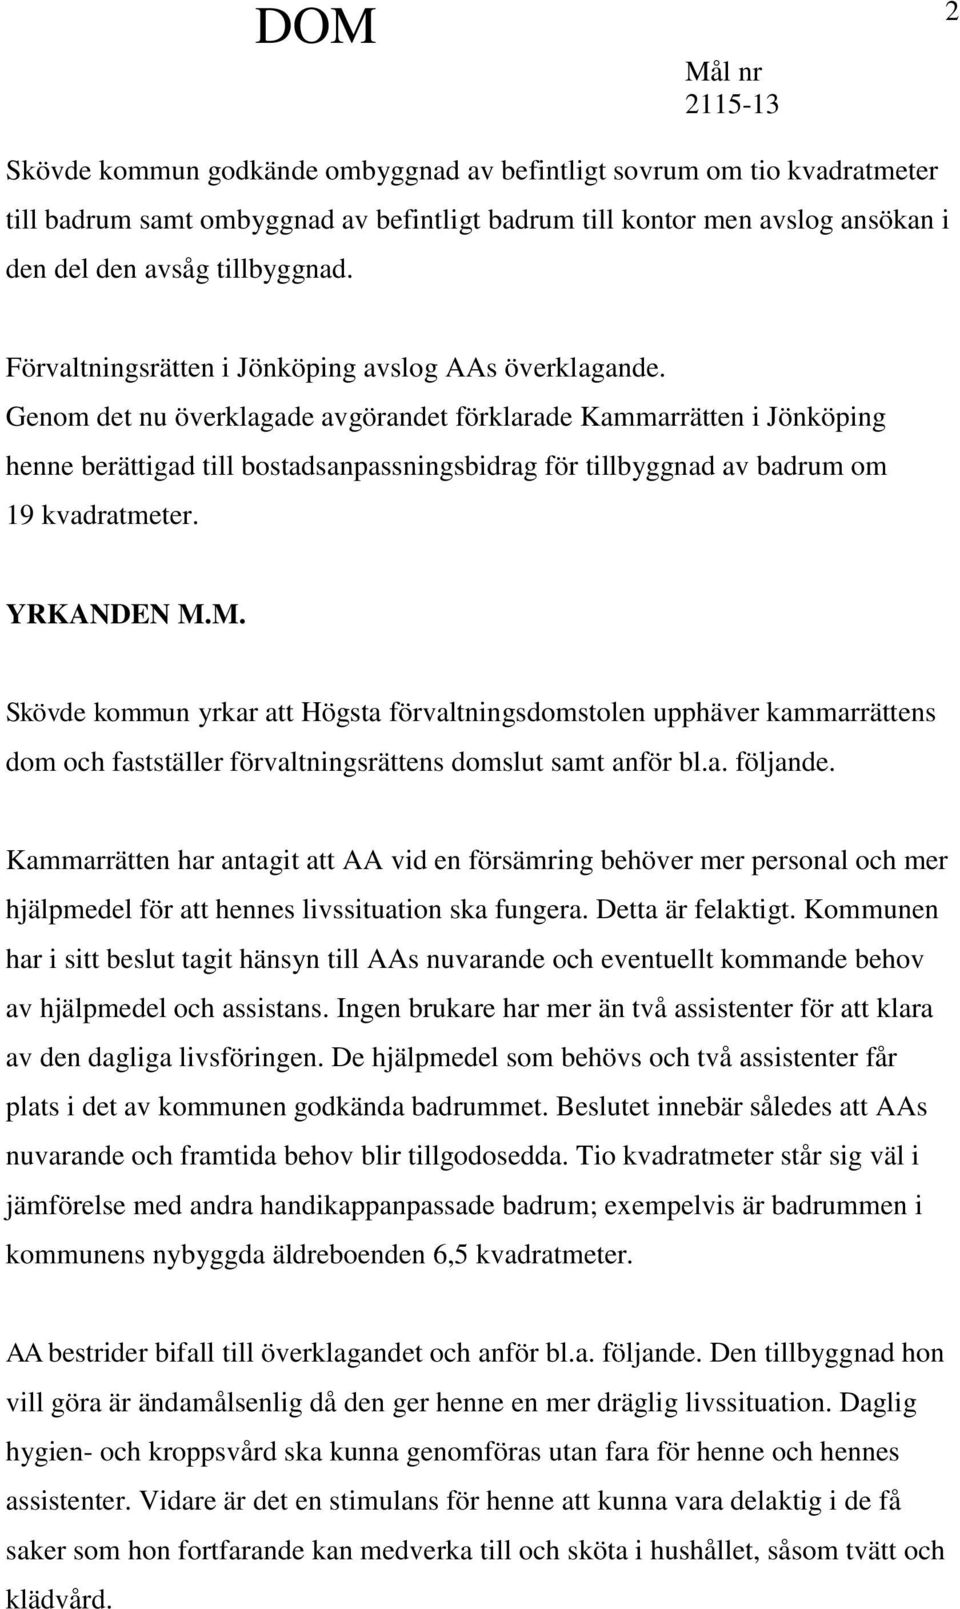 Genom det nu överklagade avgörandet förklarade Kammarrätten i Jönköping henne berättigad till bostadsanpassningsbidrag för tillbyggnad av badrum om 19 kvadratmeter. YRKANDEN M.